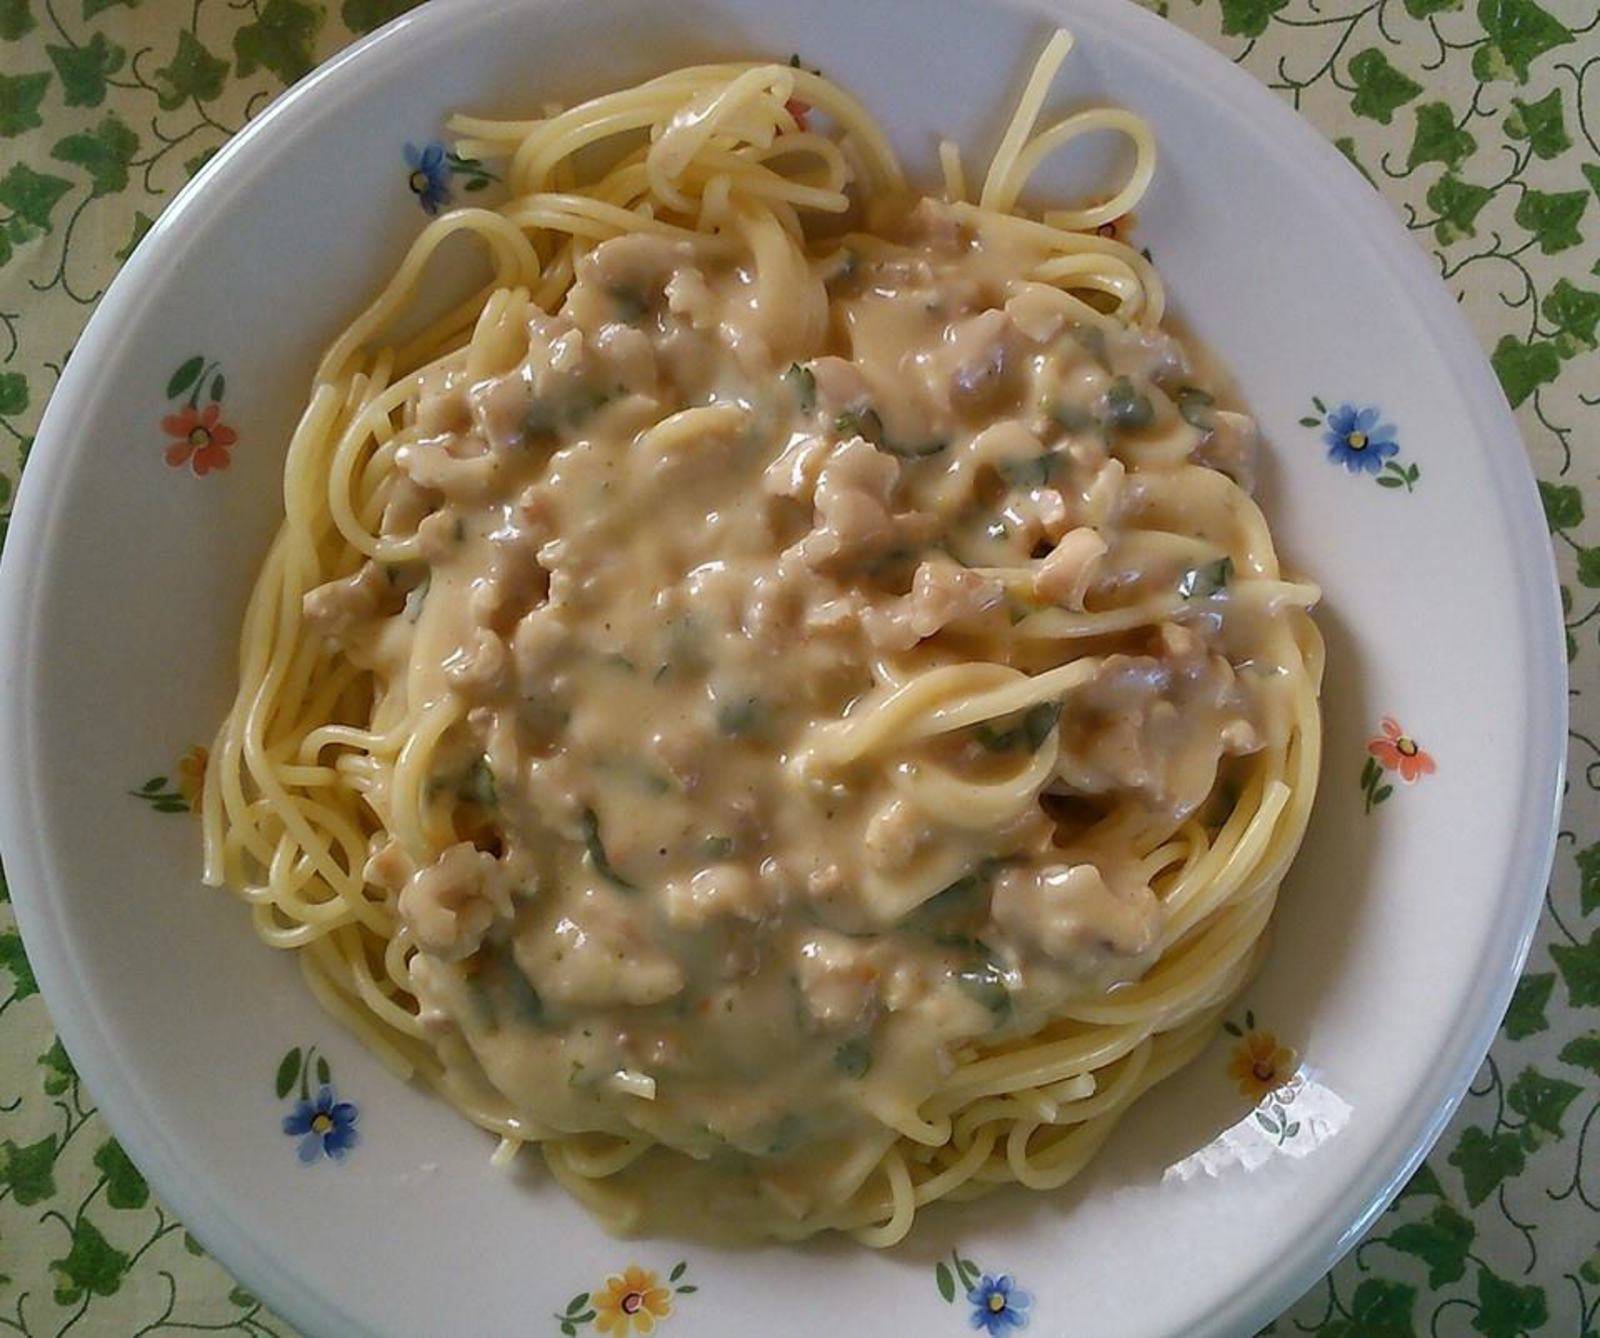 Spaghetti mit Walnuss Sauce